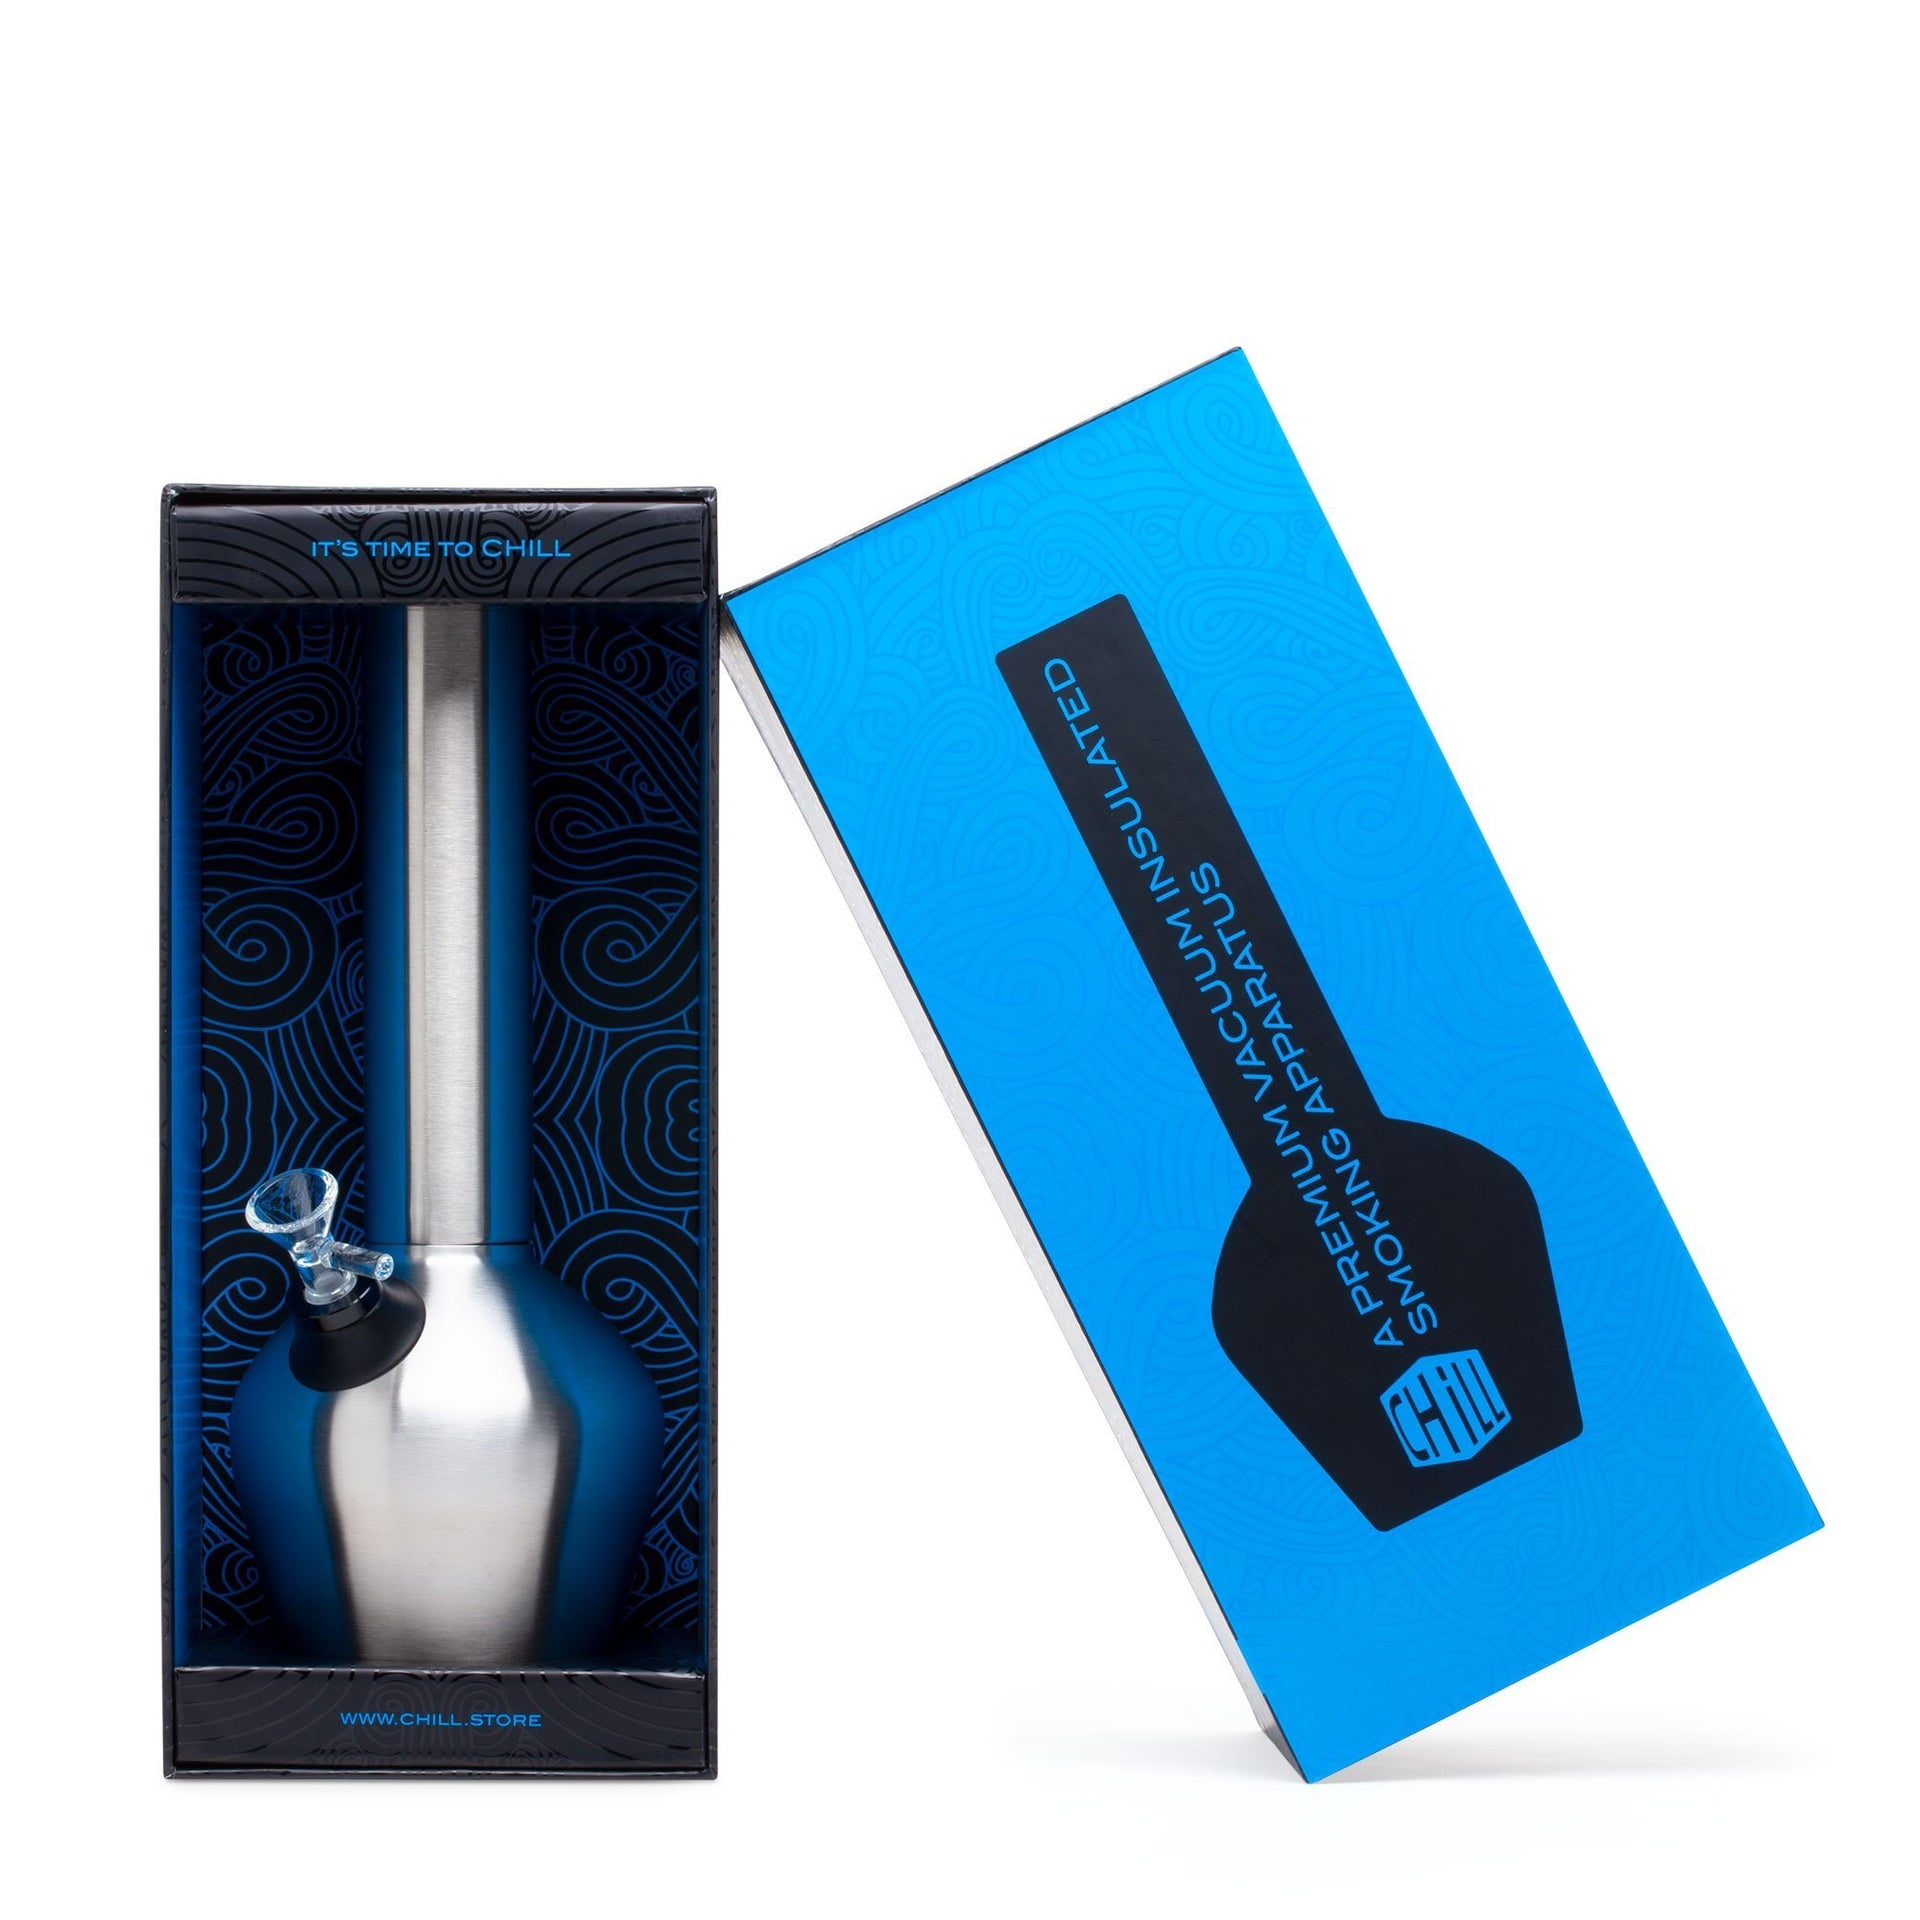 Waterpipe bong smoking pipe - . Gift Ideas